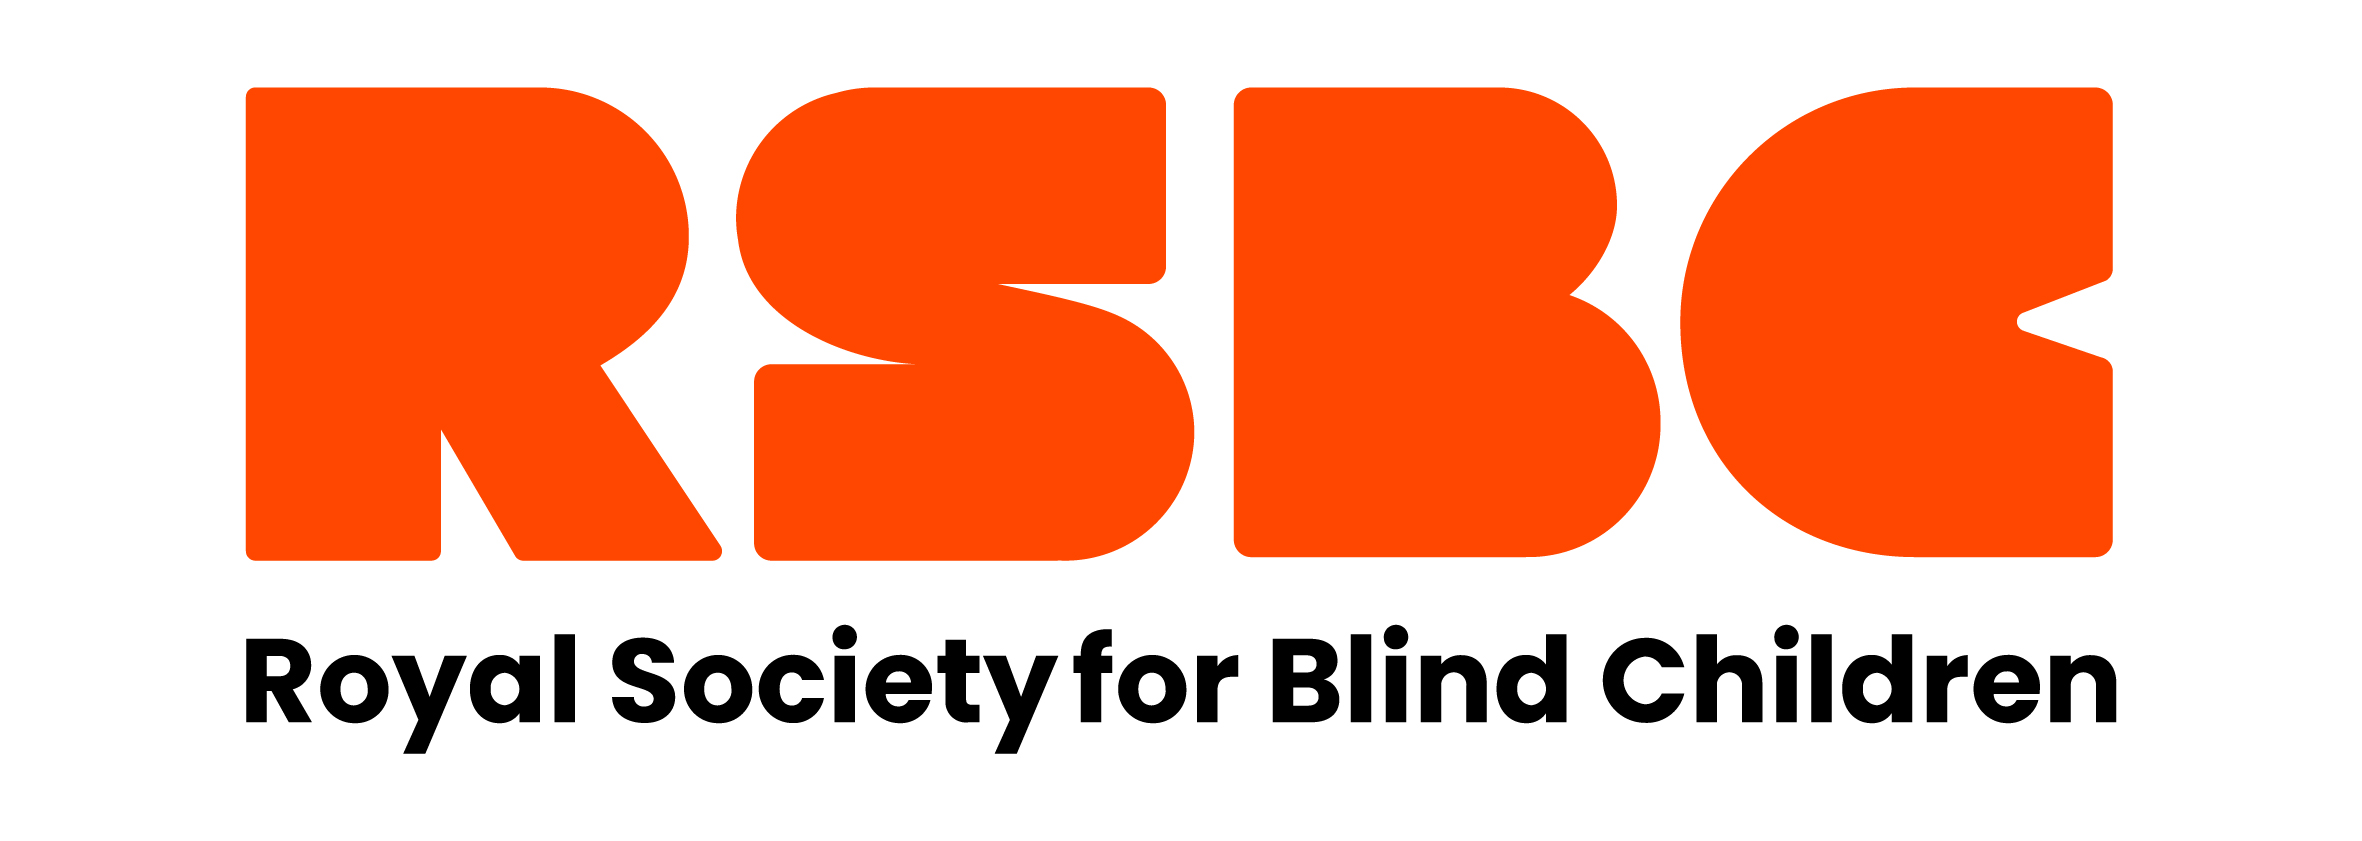 Royal Society for Blind Children logo and streamline